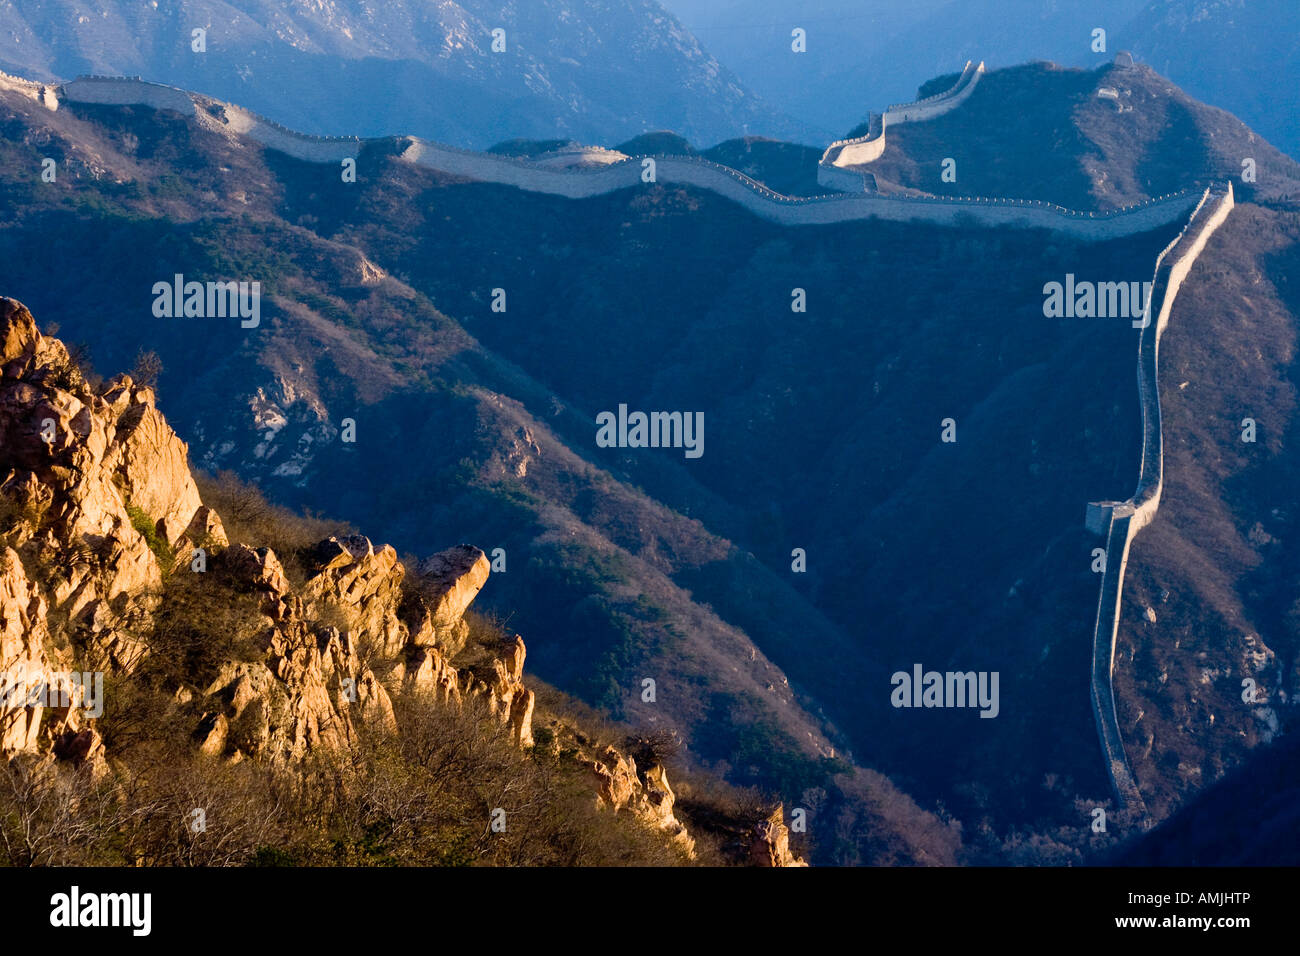 The Great Wall of China at Badaling Beijing China Stock Photo